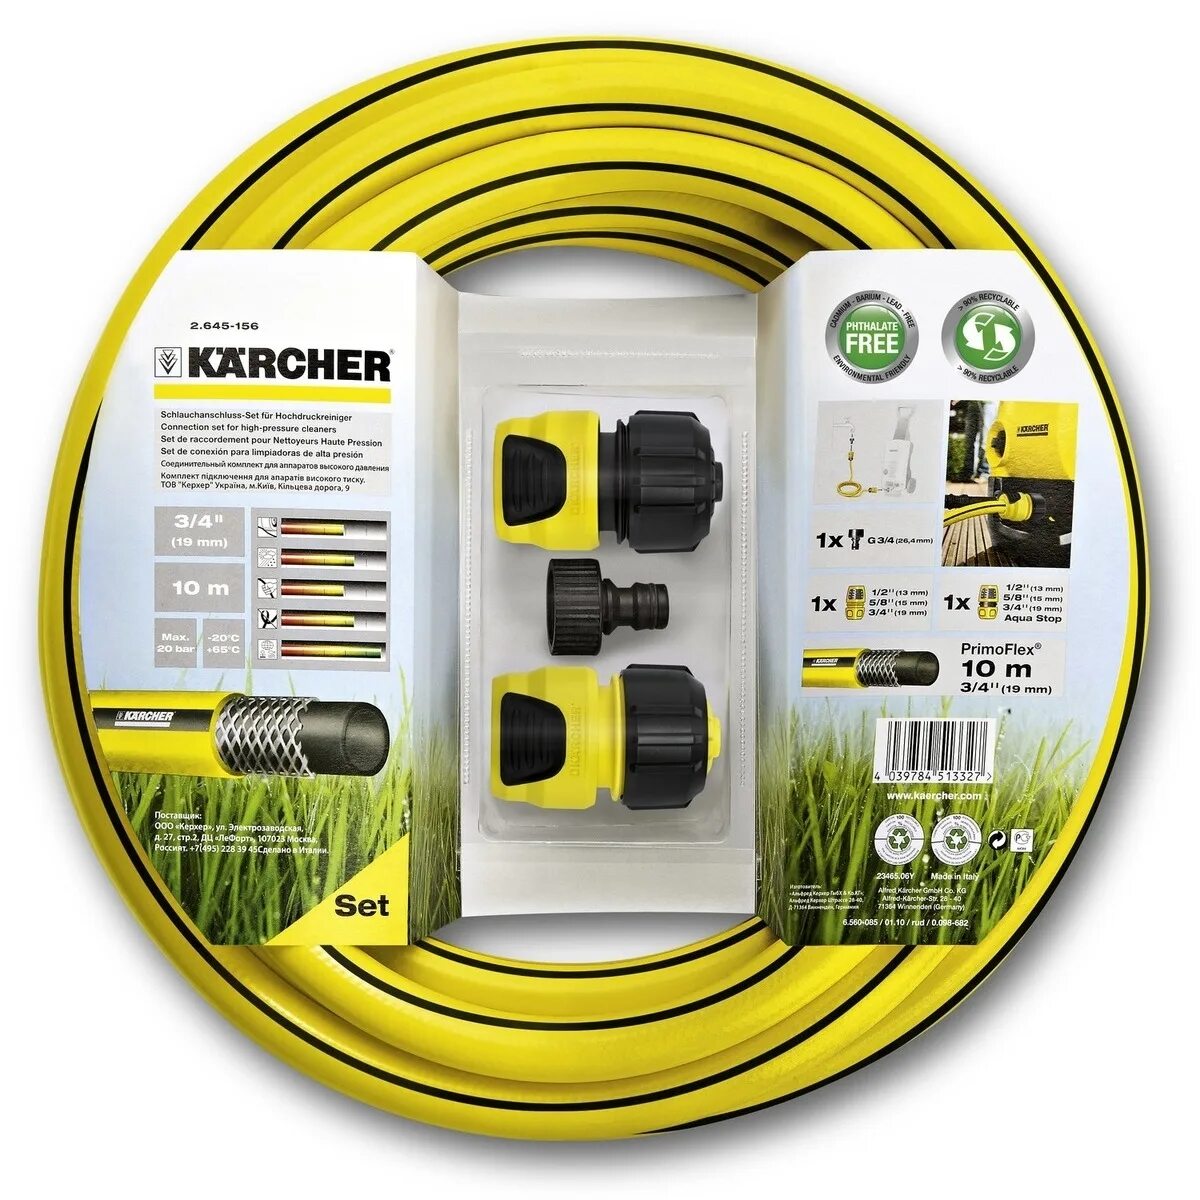 Комплект для полива Karcher шланг PRIMOFLEX 3/4" 10 М, 2 коннектора, штуцер. Karcher 2.645-156. Комплект для подключения минимоек Karcher 2.645-156.0. Karcher – набор 2.645-238.0. Шланг подачи воды для мойки